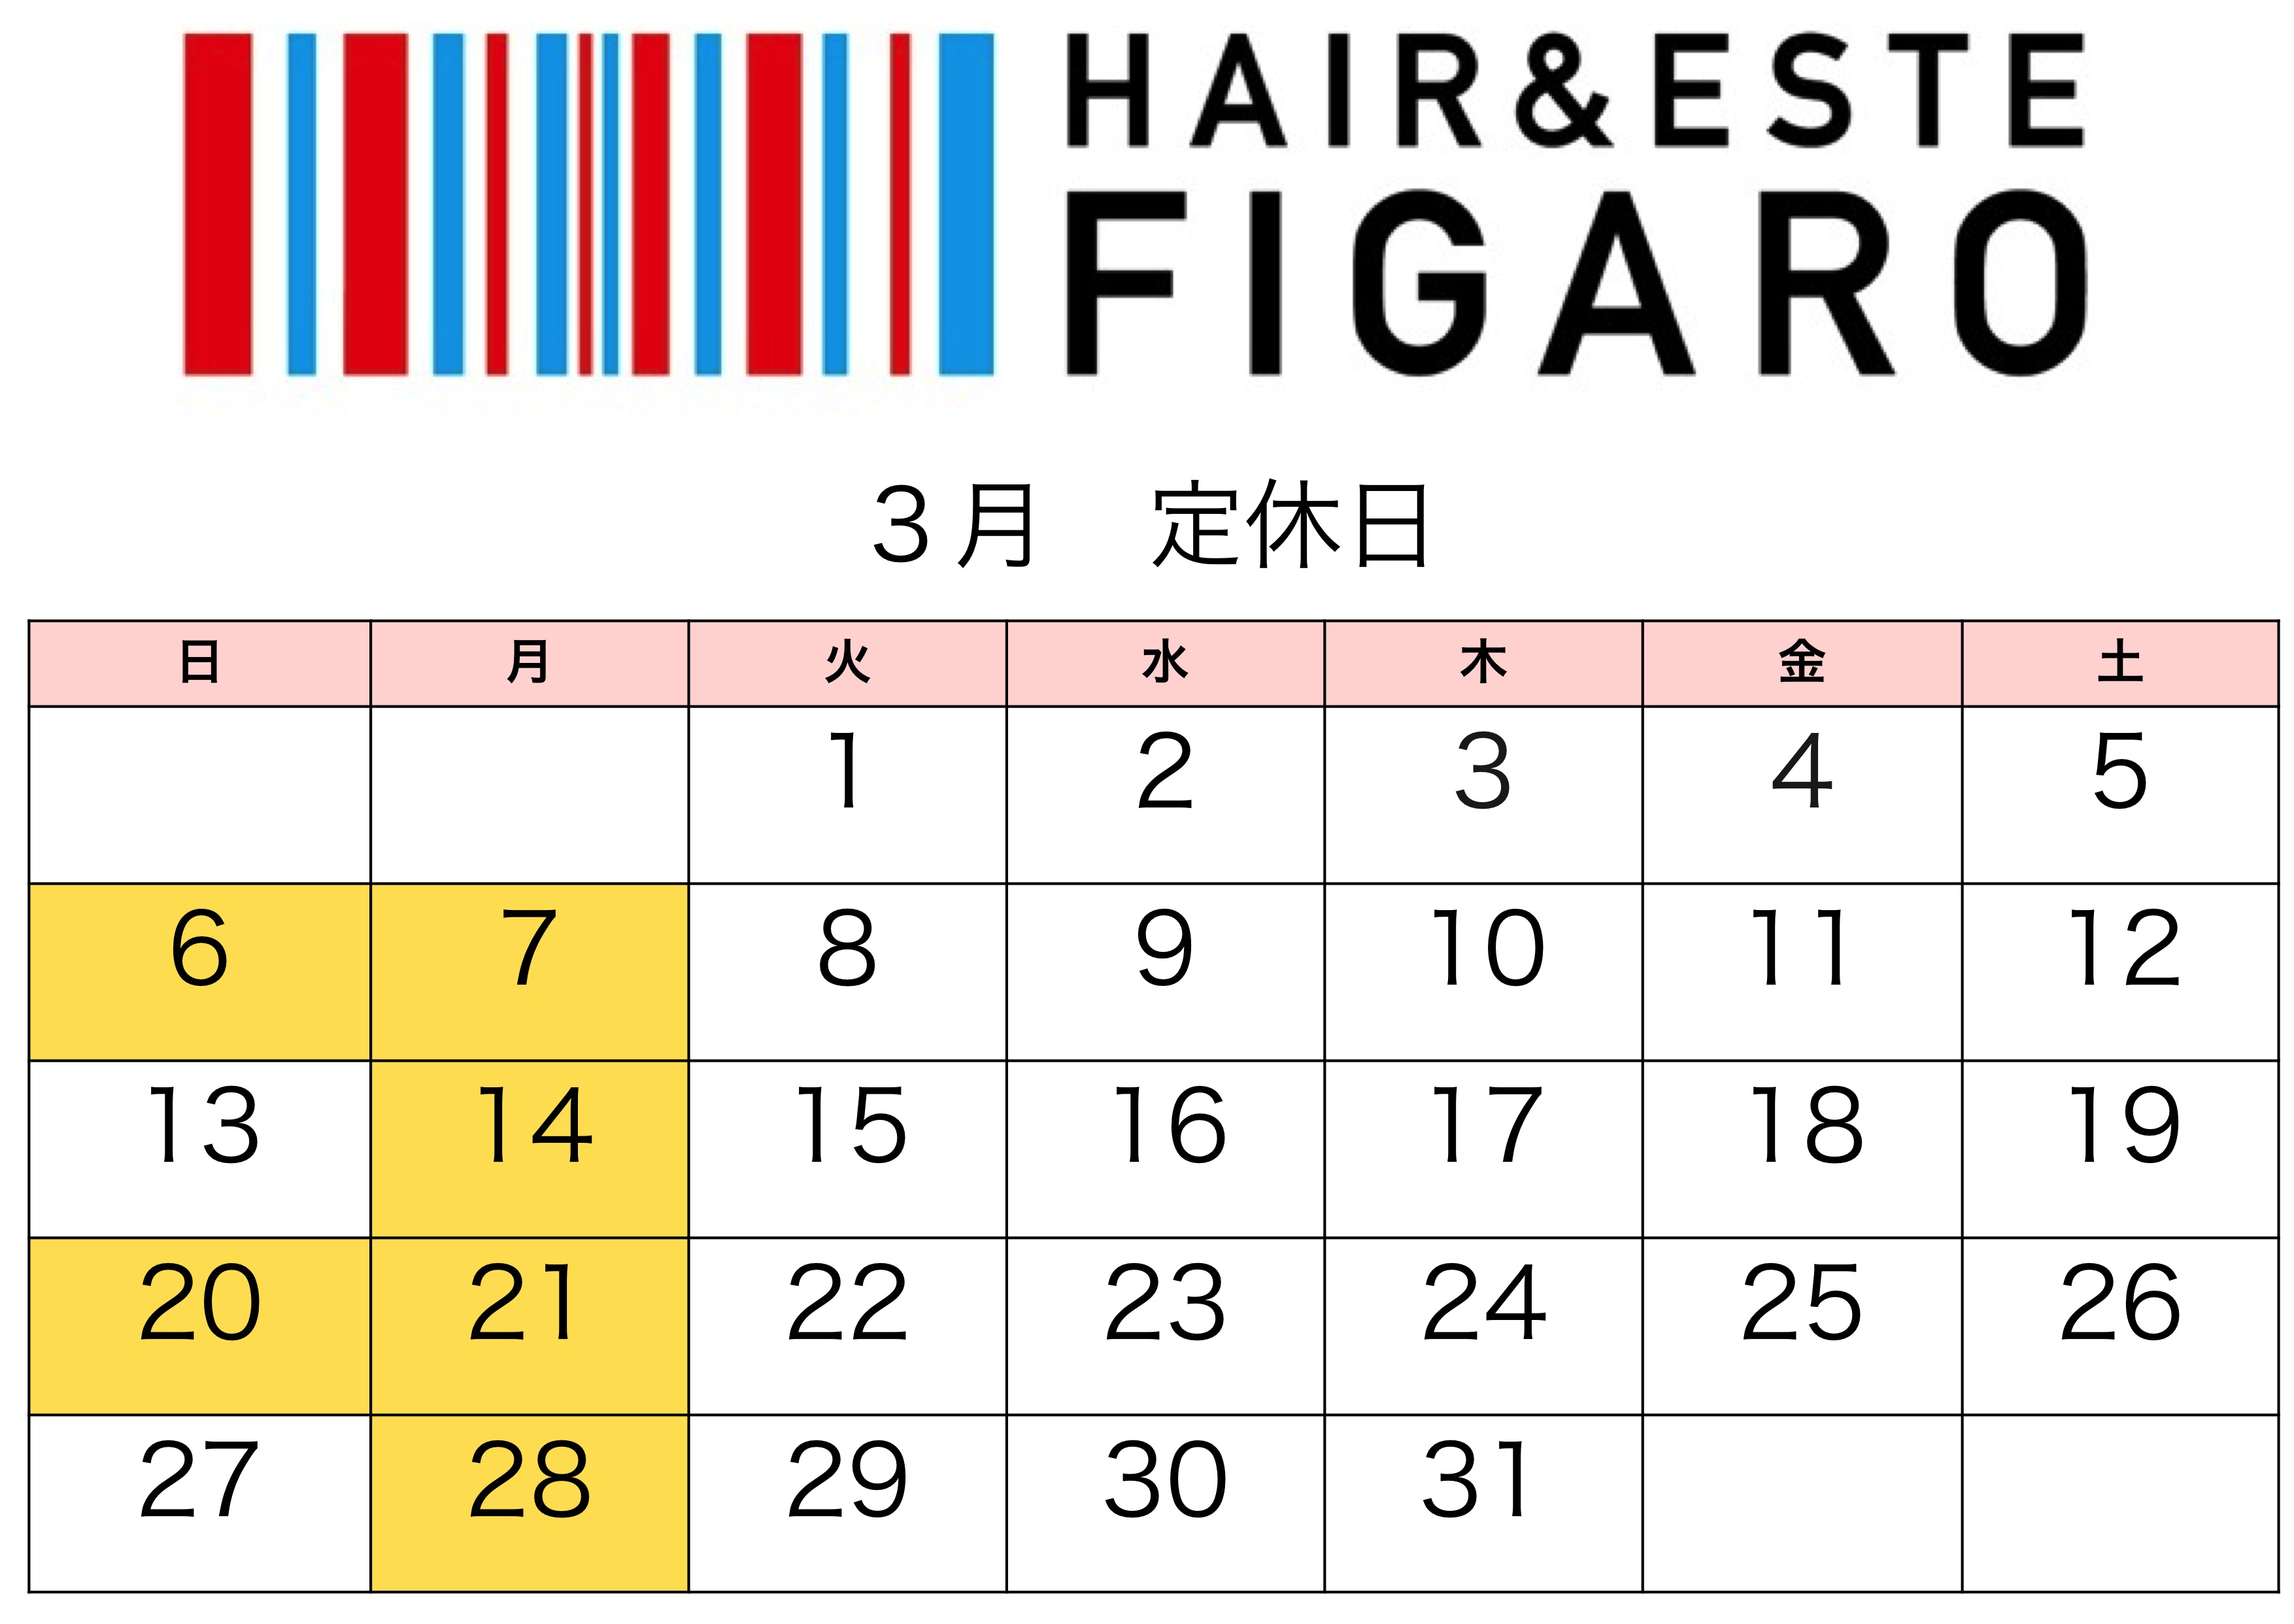 http://figaro-hair.com/blog/%EF%BC%92%EF%BC%90%EF%BC%91%EF%BC%96%E3%80%81%EF%BC%93%E6%9C%88.jpg